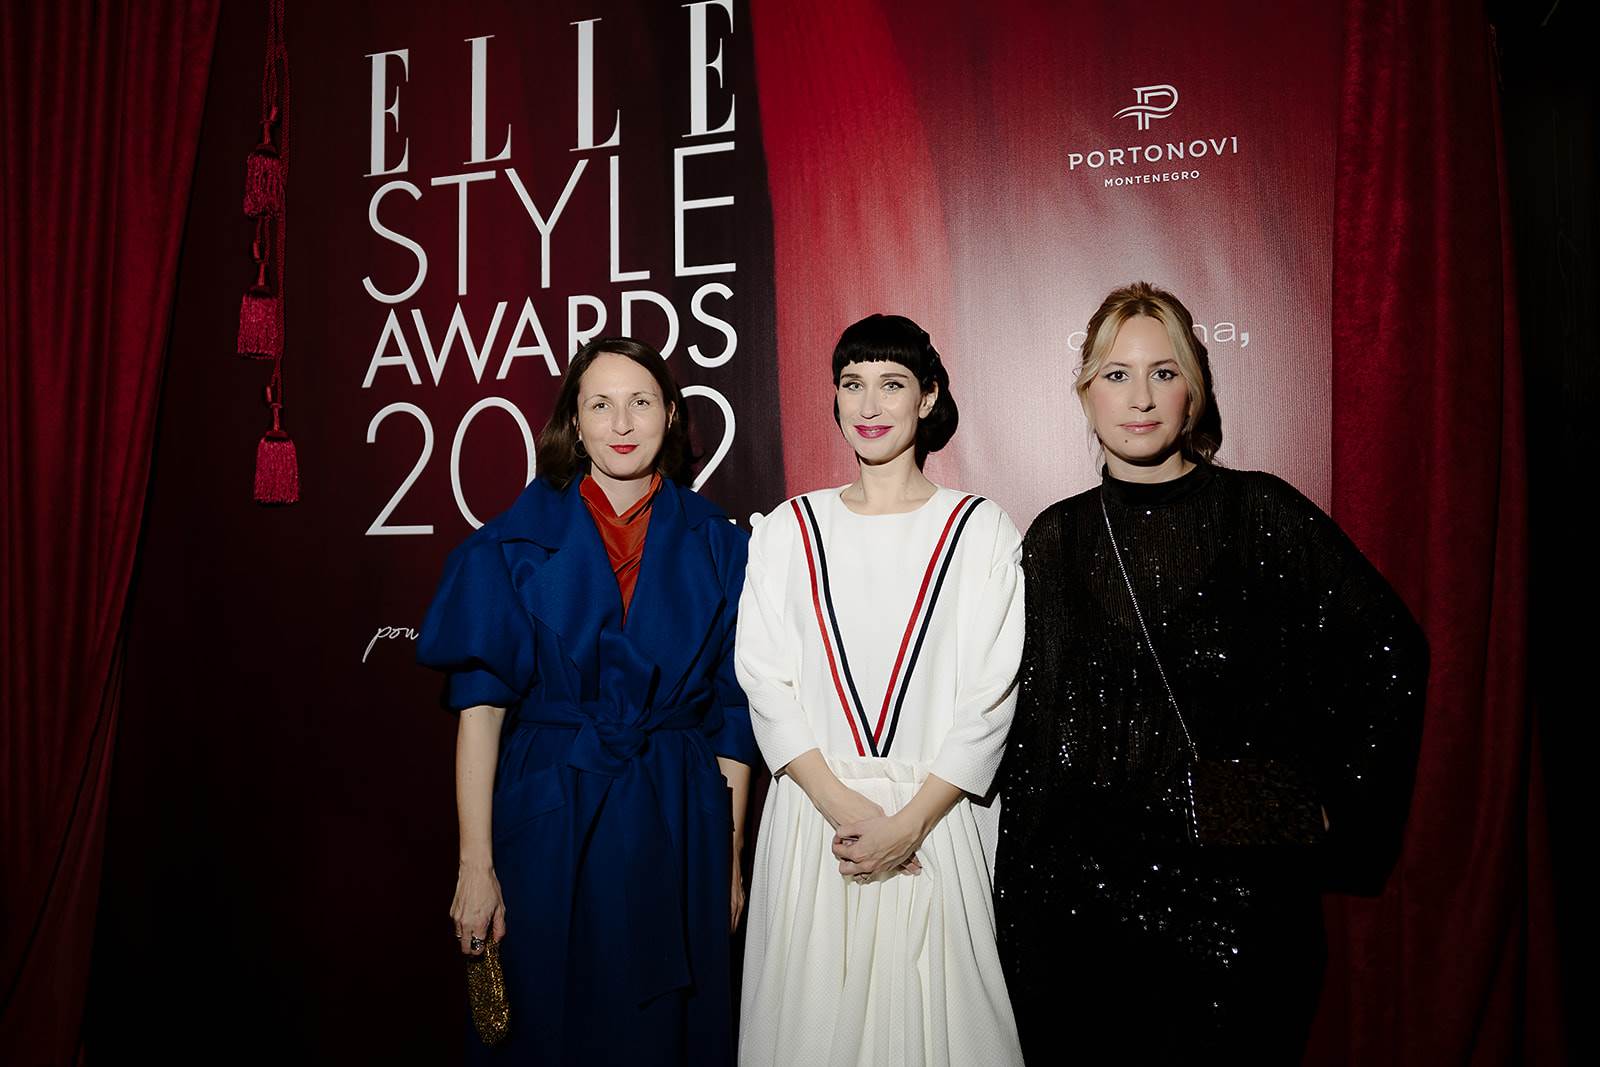  Najbolje obučeni na Elle style awards 2022 